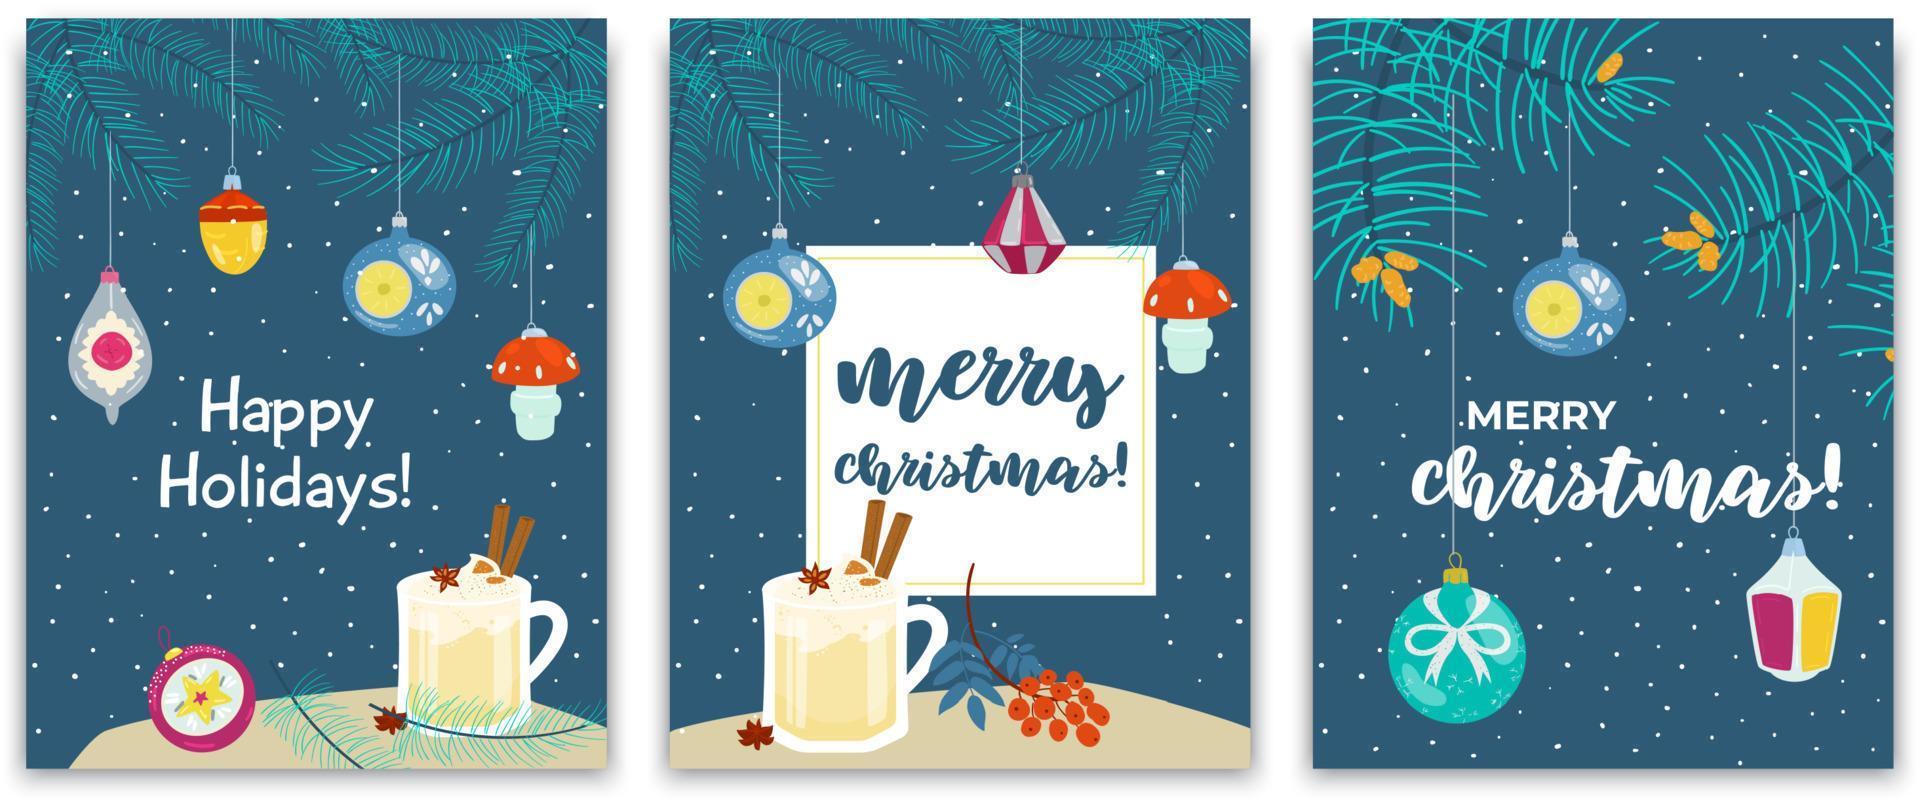 conjunto vectorial de postales navideñas con juguetes retro, ramas de abeto y taza de ponche de huevo sobre fondo azul oscuro. vector